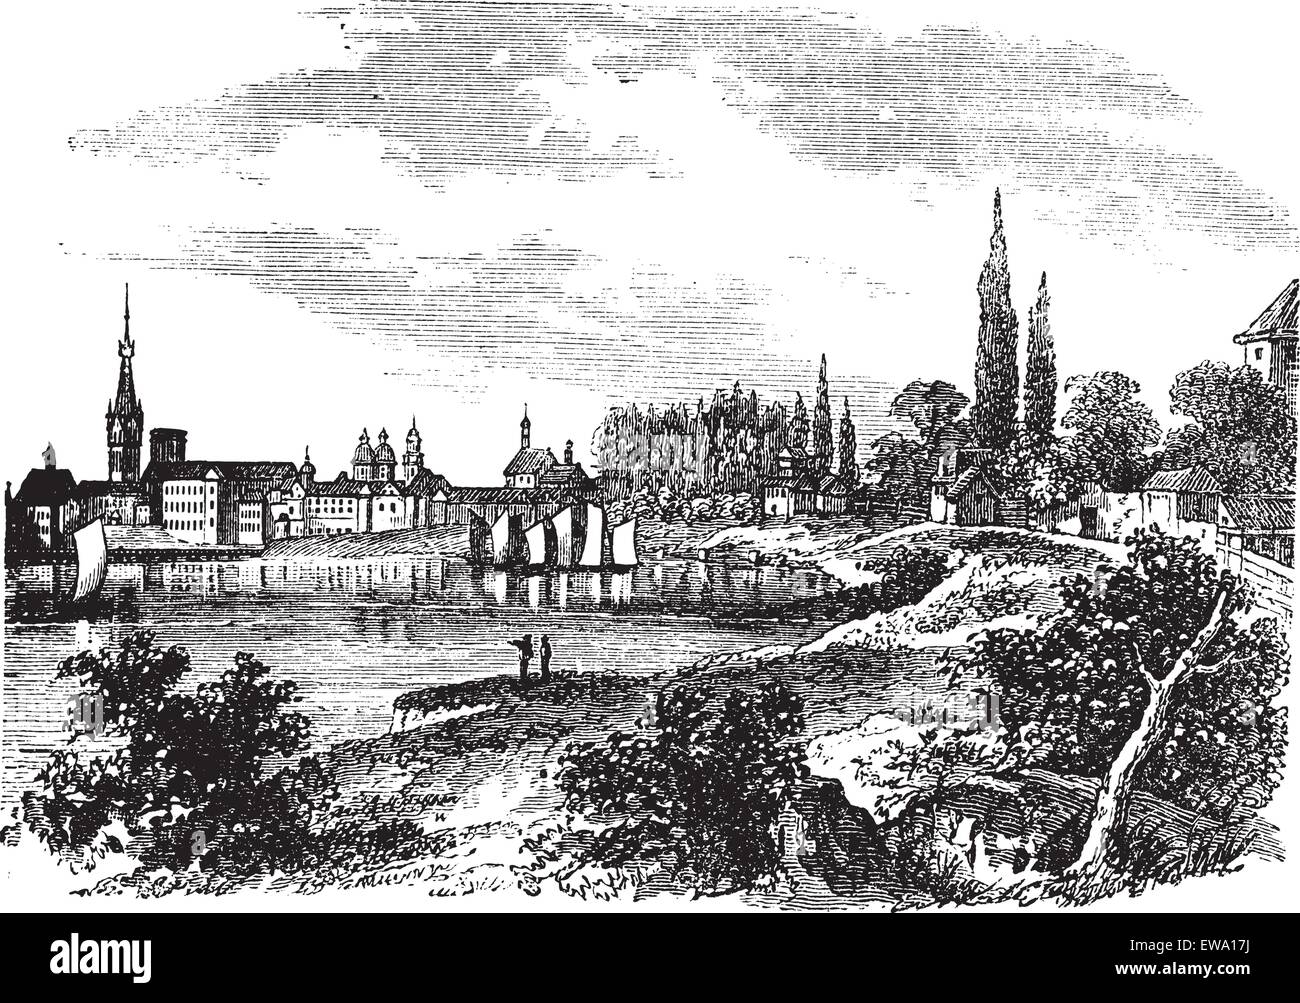 Dusseldorf en Rhénanie du Nord-Westphalie, en Allemagne, au cours des années 1890, vintage la gravure. Vieille illustration gravée de Dusseldorf. Illustration de Vecteur